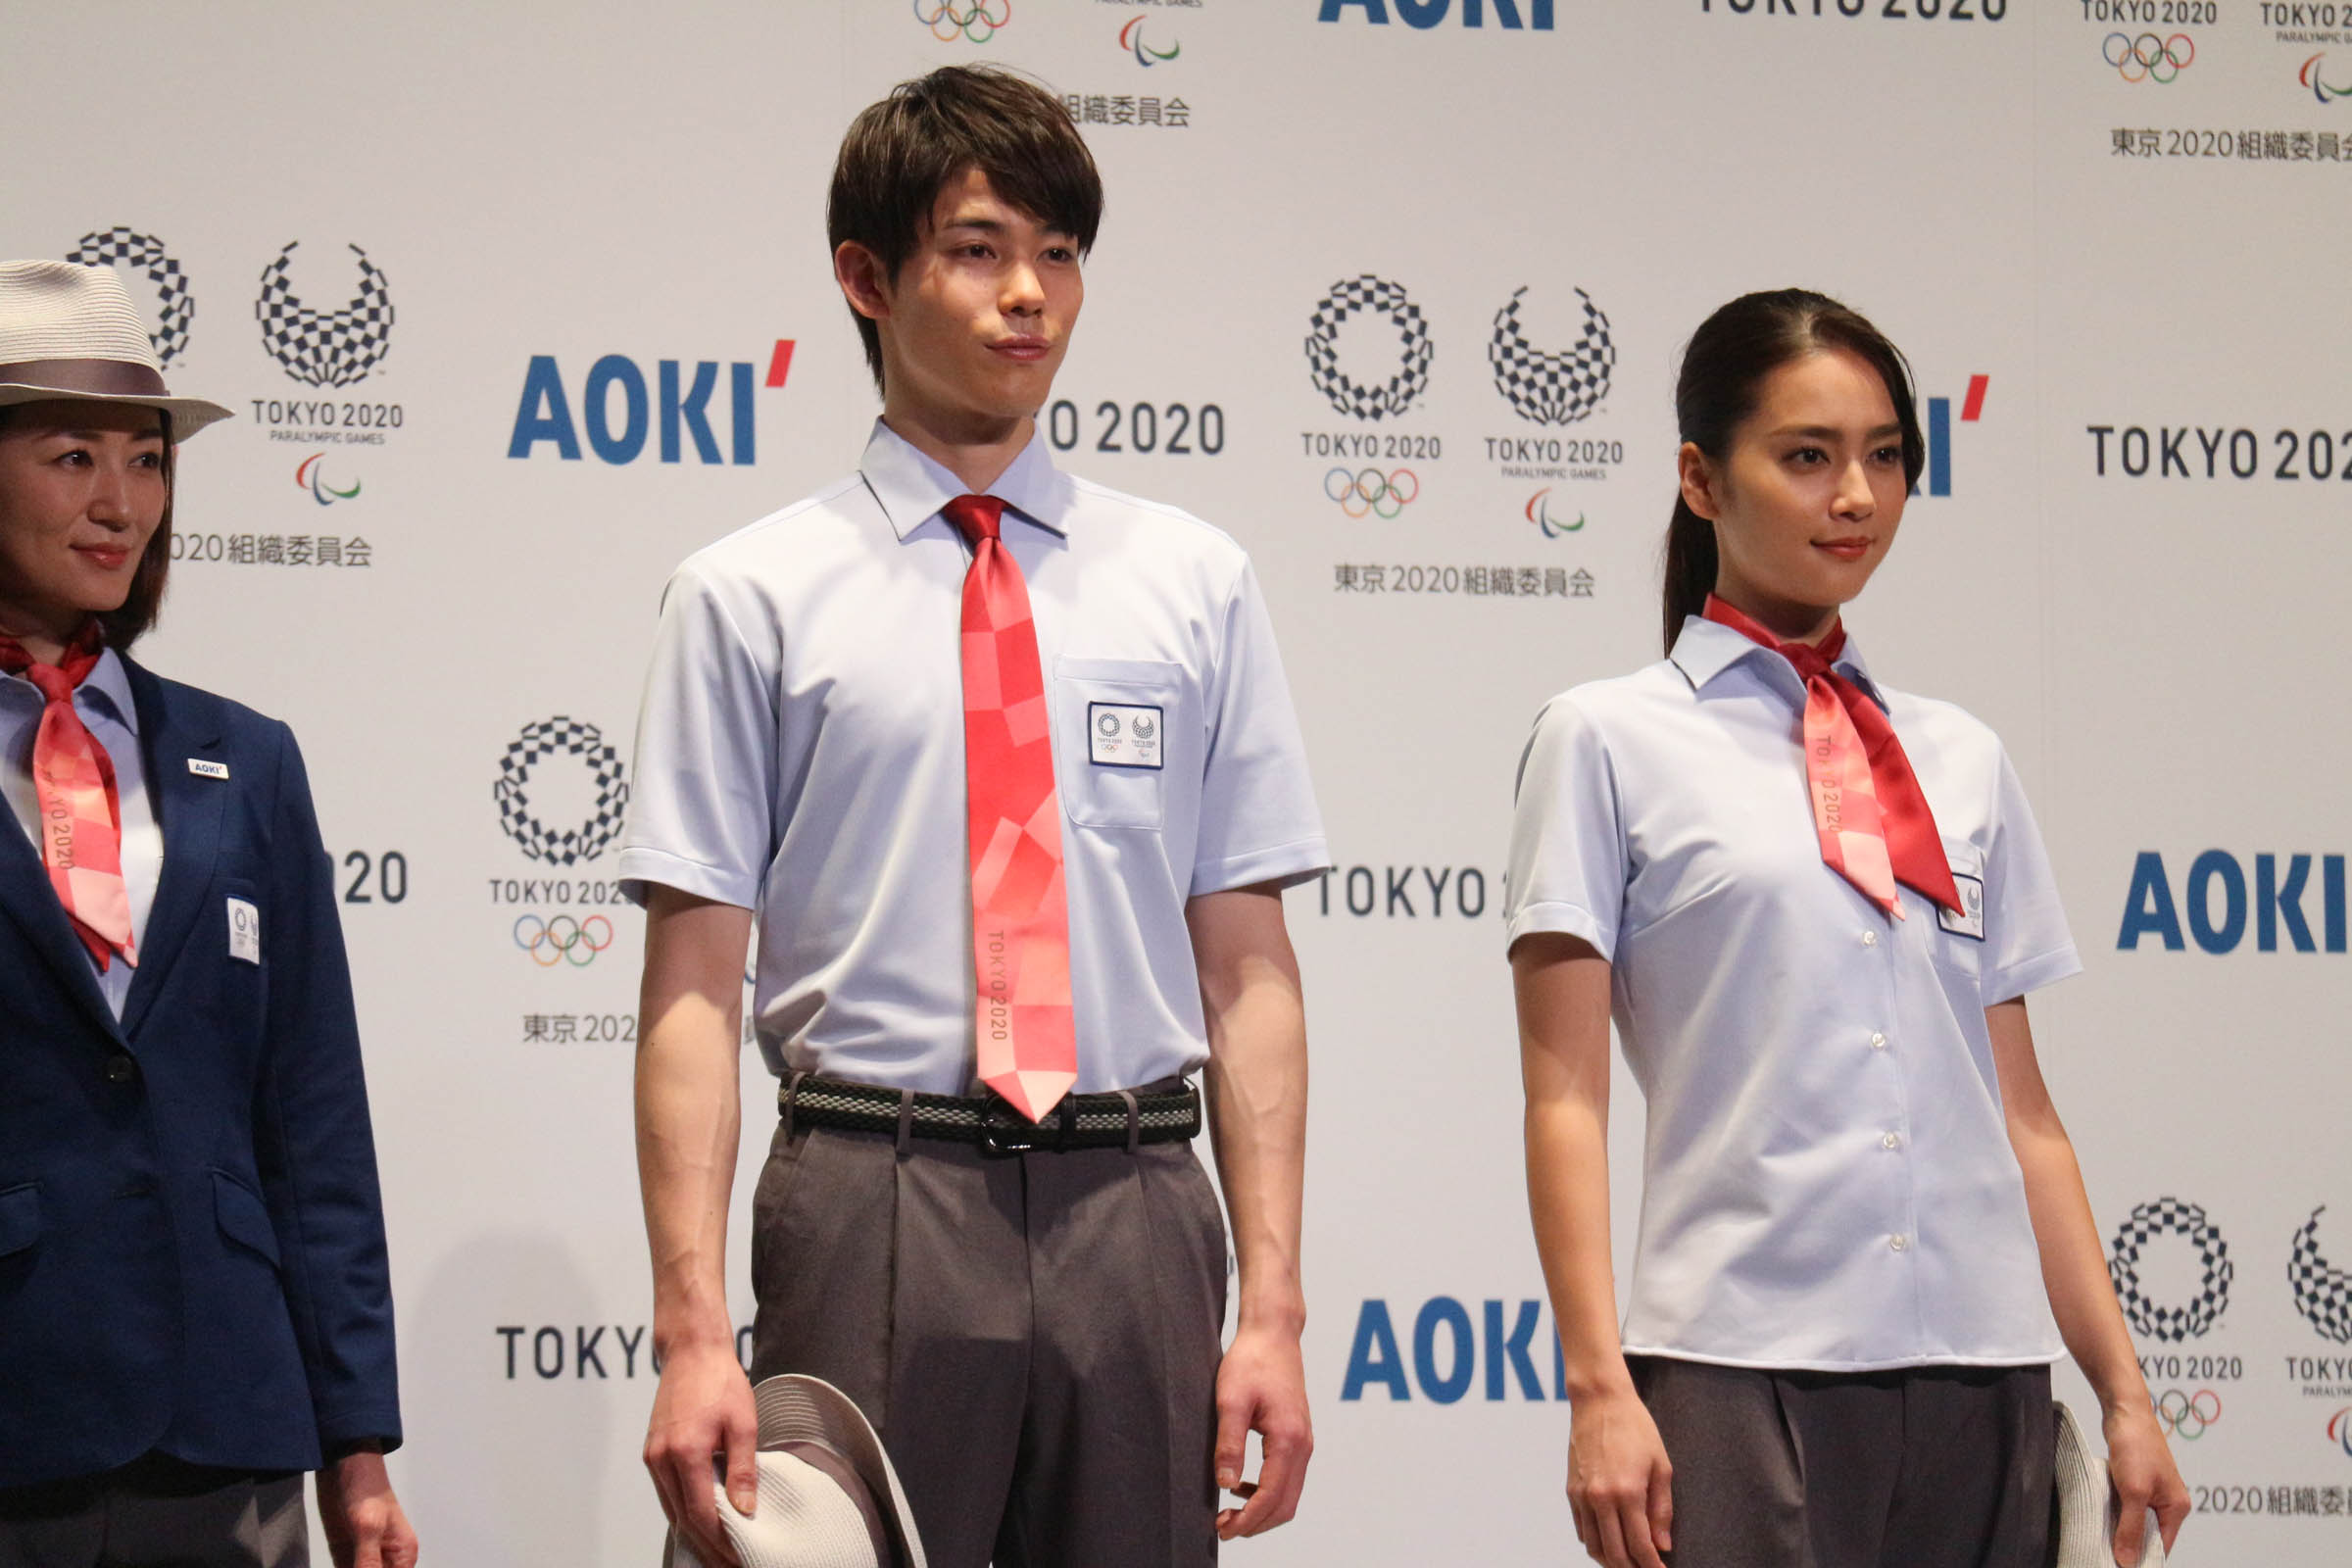 東京五輪審判員のユニフォーム2種が披露、フォーマルウェアでは女性の